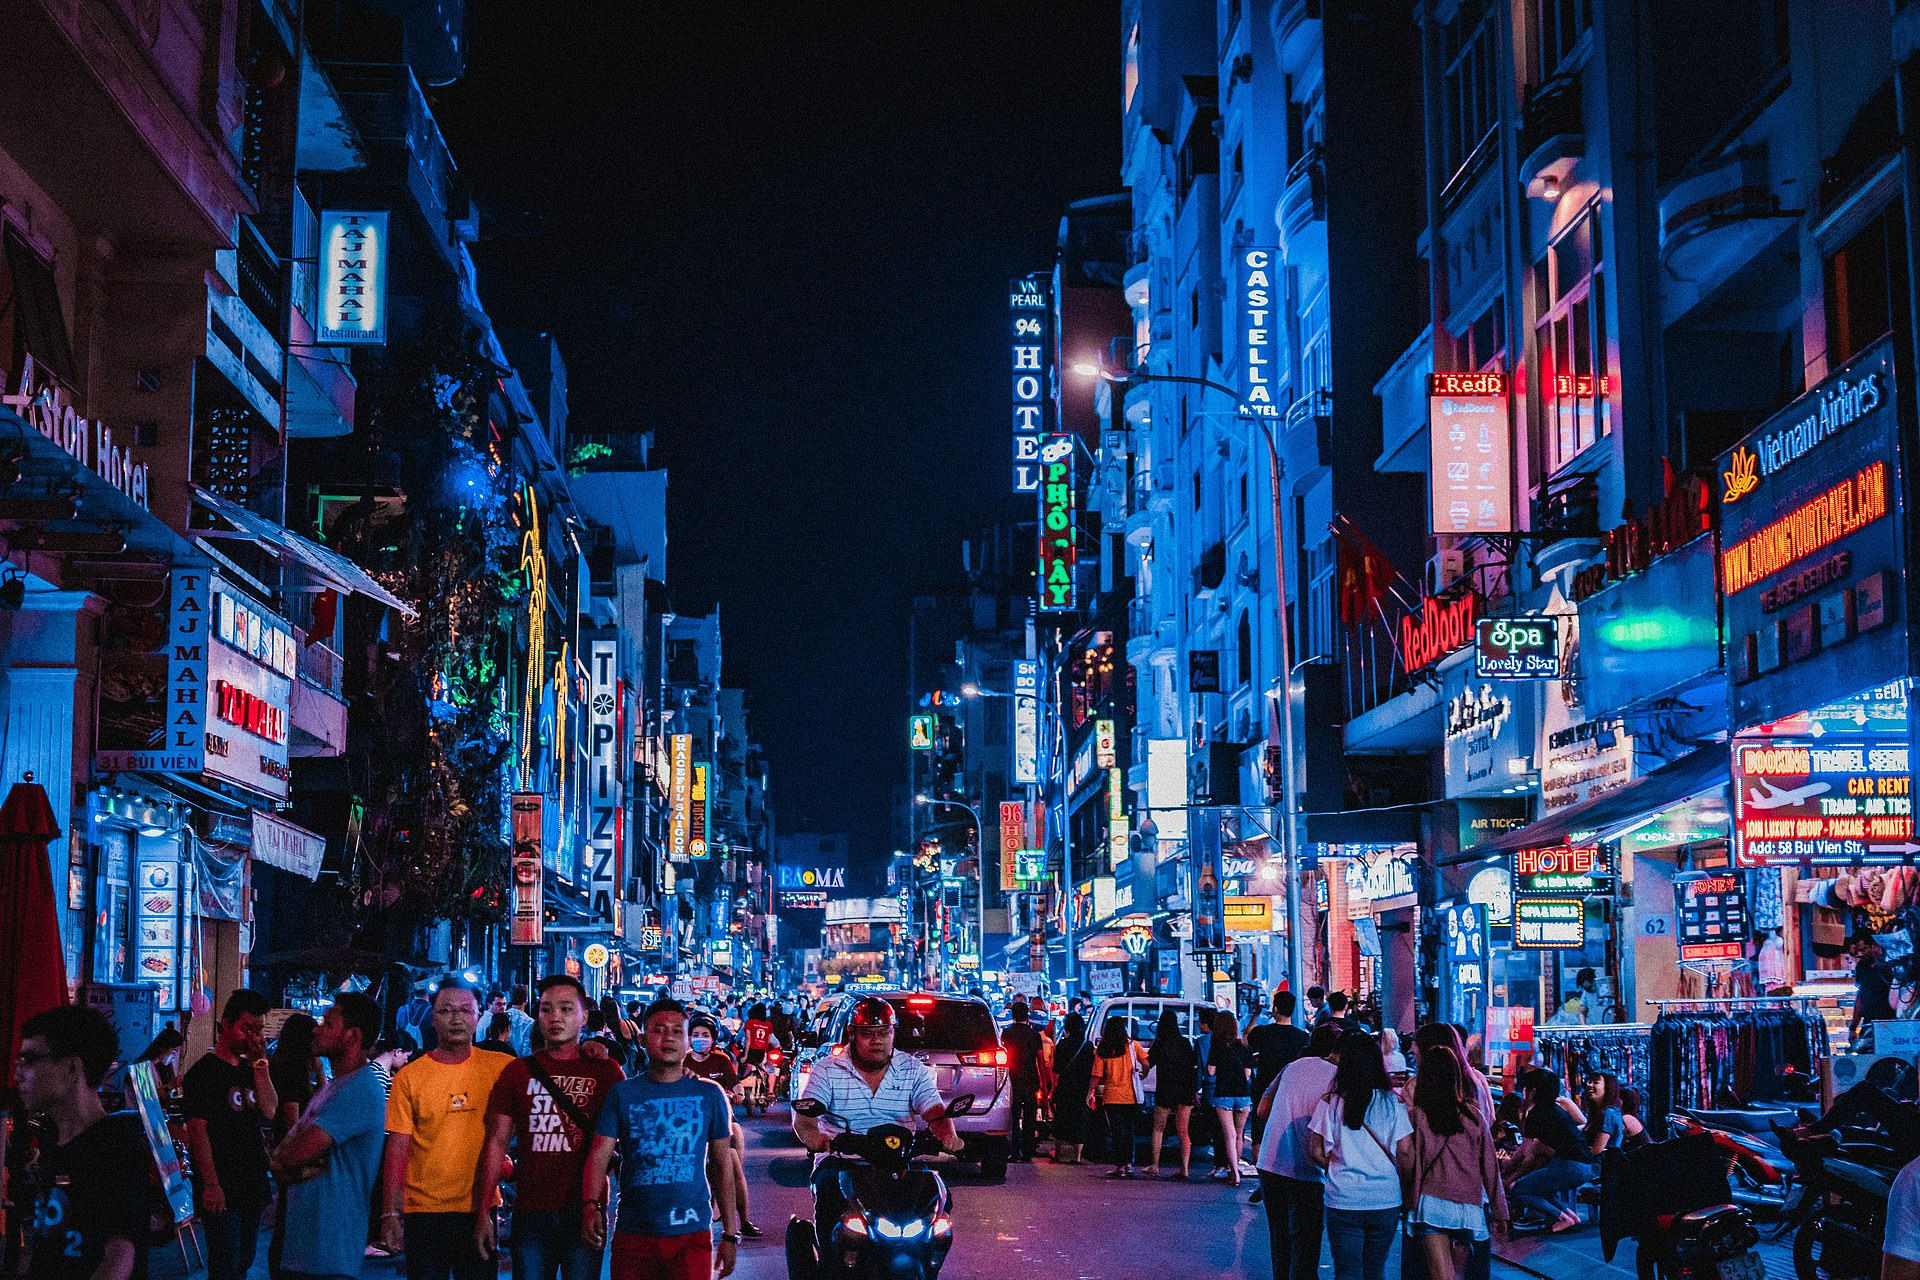 Thành phố Hồ Chí Minh về đêm trong một bức ảnh được nhiếp ảnh gia miêu tả là “sự hỗn loạn có tổ chức”. Thành phố Hồ Chí Minh là thành phố được ghé thăm nhiều nhất tại Việt Nam, với 6,3 triệu lượt khách trong năm 2017.